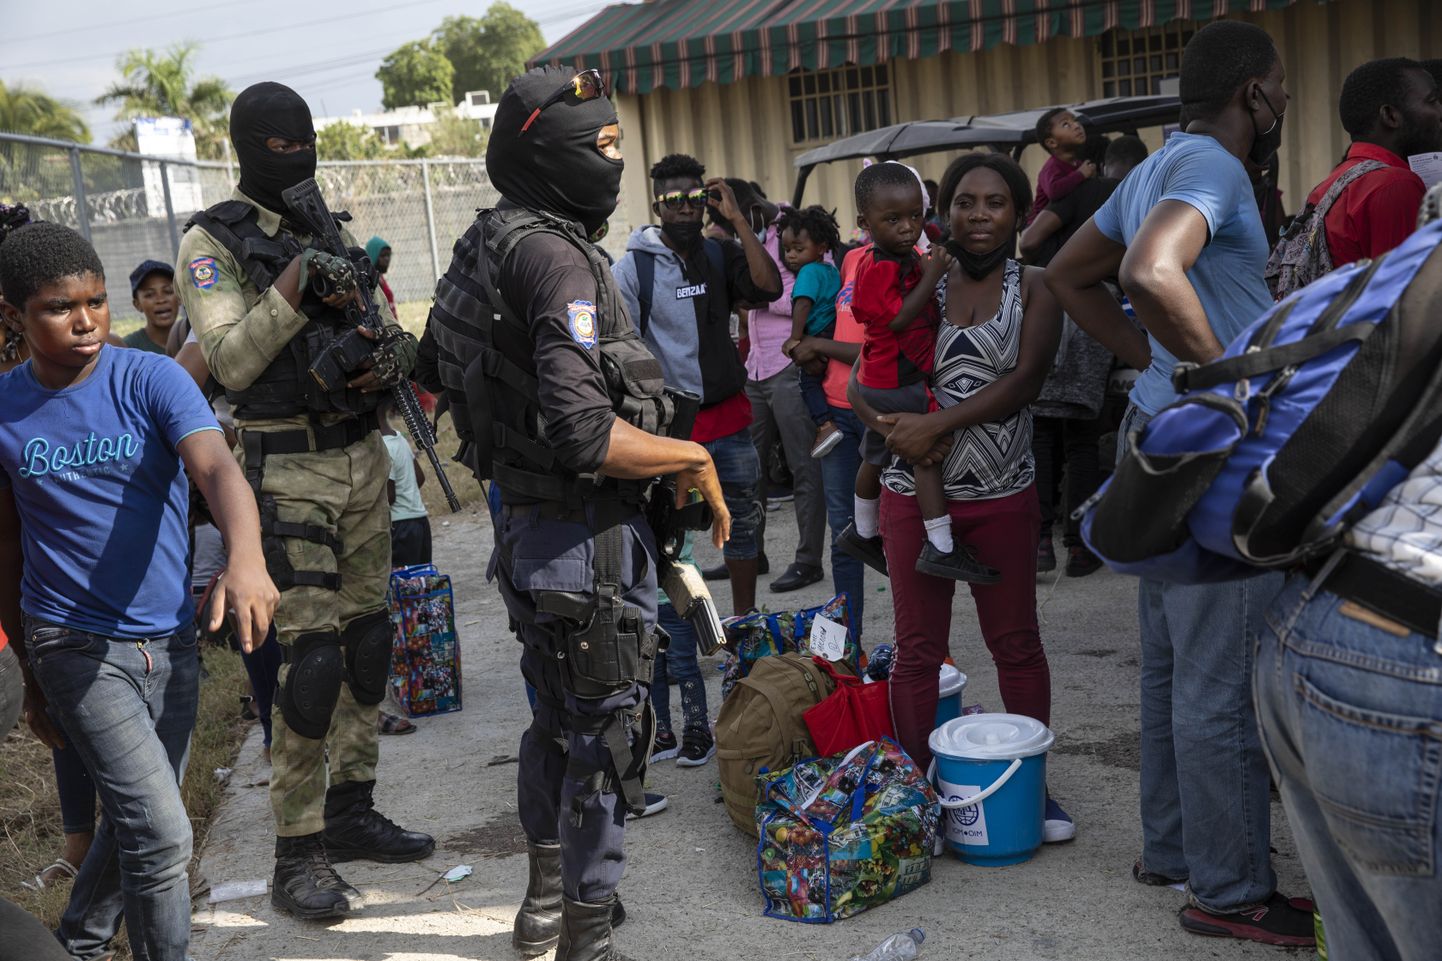 Esimesed lennukitäied USAst välja saadetud Haiti migrante jõudsid eile Port-au-Prince’i lennujaama. Paljud saareriiki deporteeritutest olid lapsed, kes on sündinud väljaspool Haitit ning kellest suurel osal on mõne muu riigi kodakondsus.